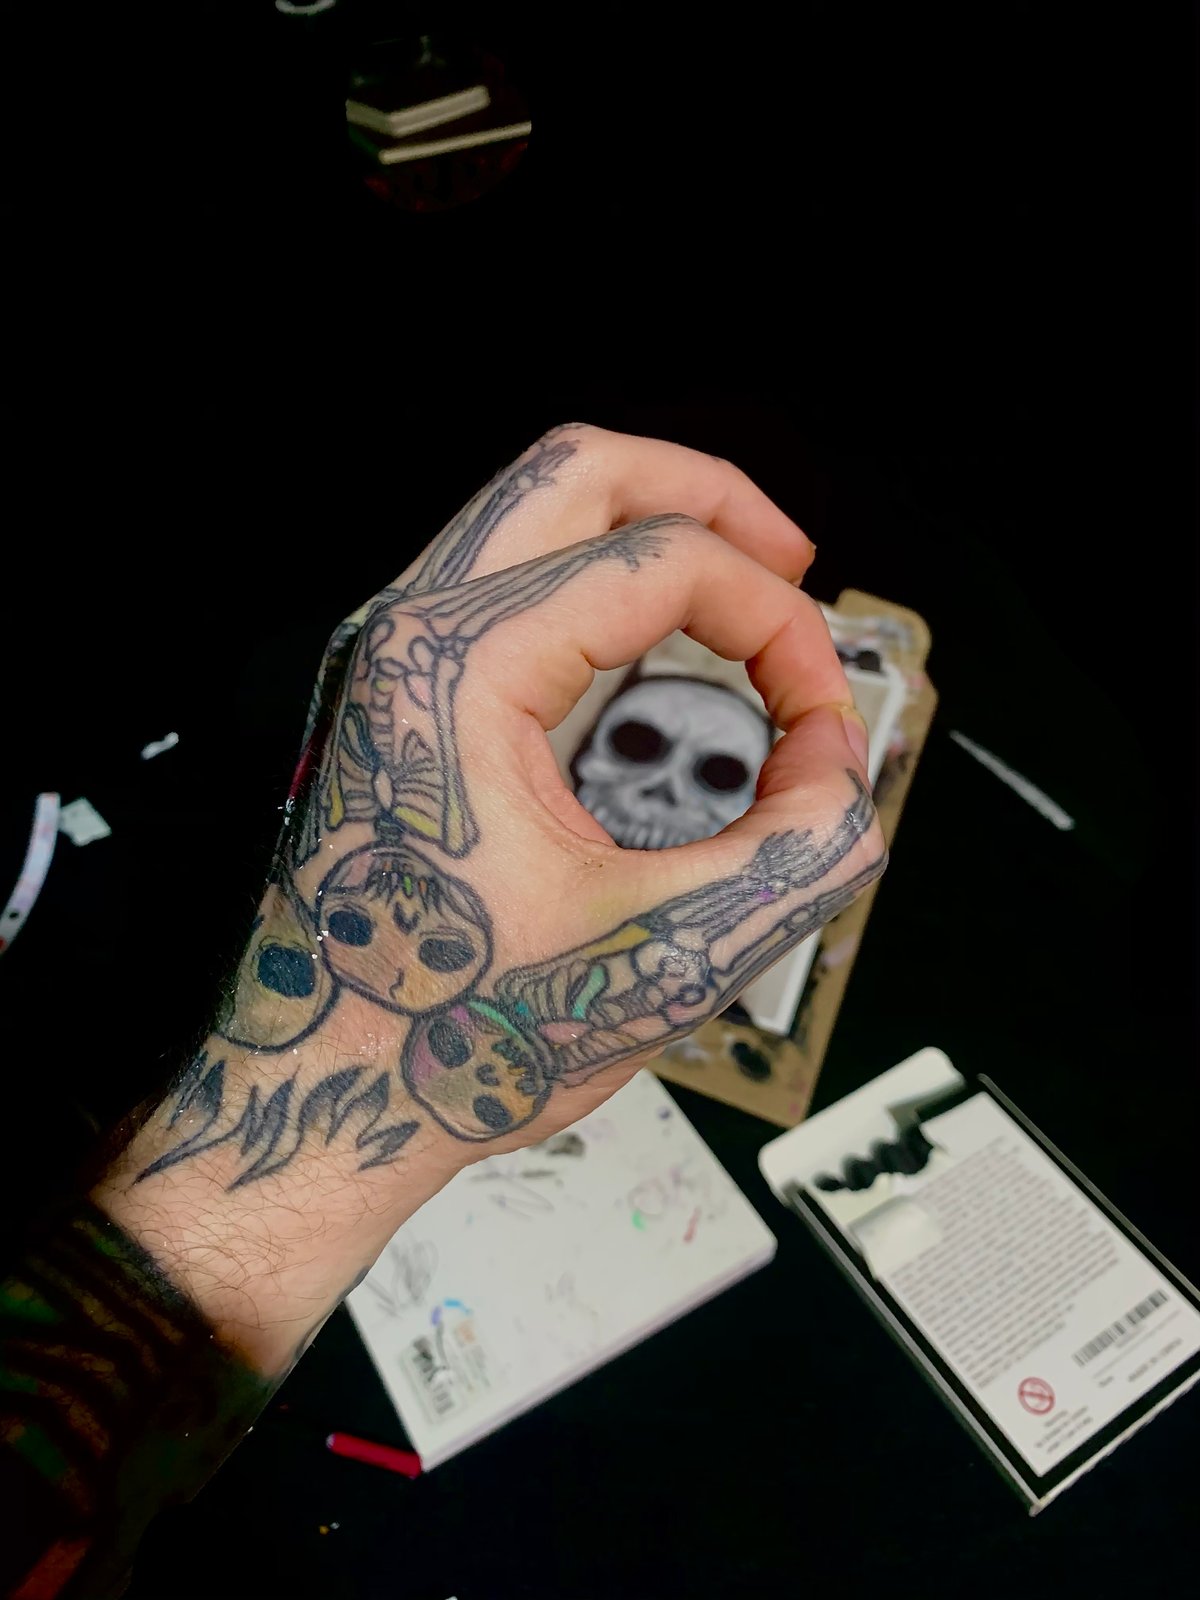 Clock Hand Skeleton Finger Tattoo #Tattoos #Artist #Comment #Share #Likes  #Clock #SkeletonFingers #BrokenClock #Black #White #HandTattoo… | Instagram